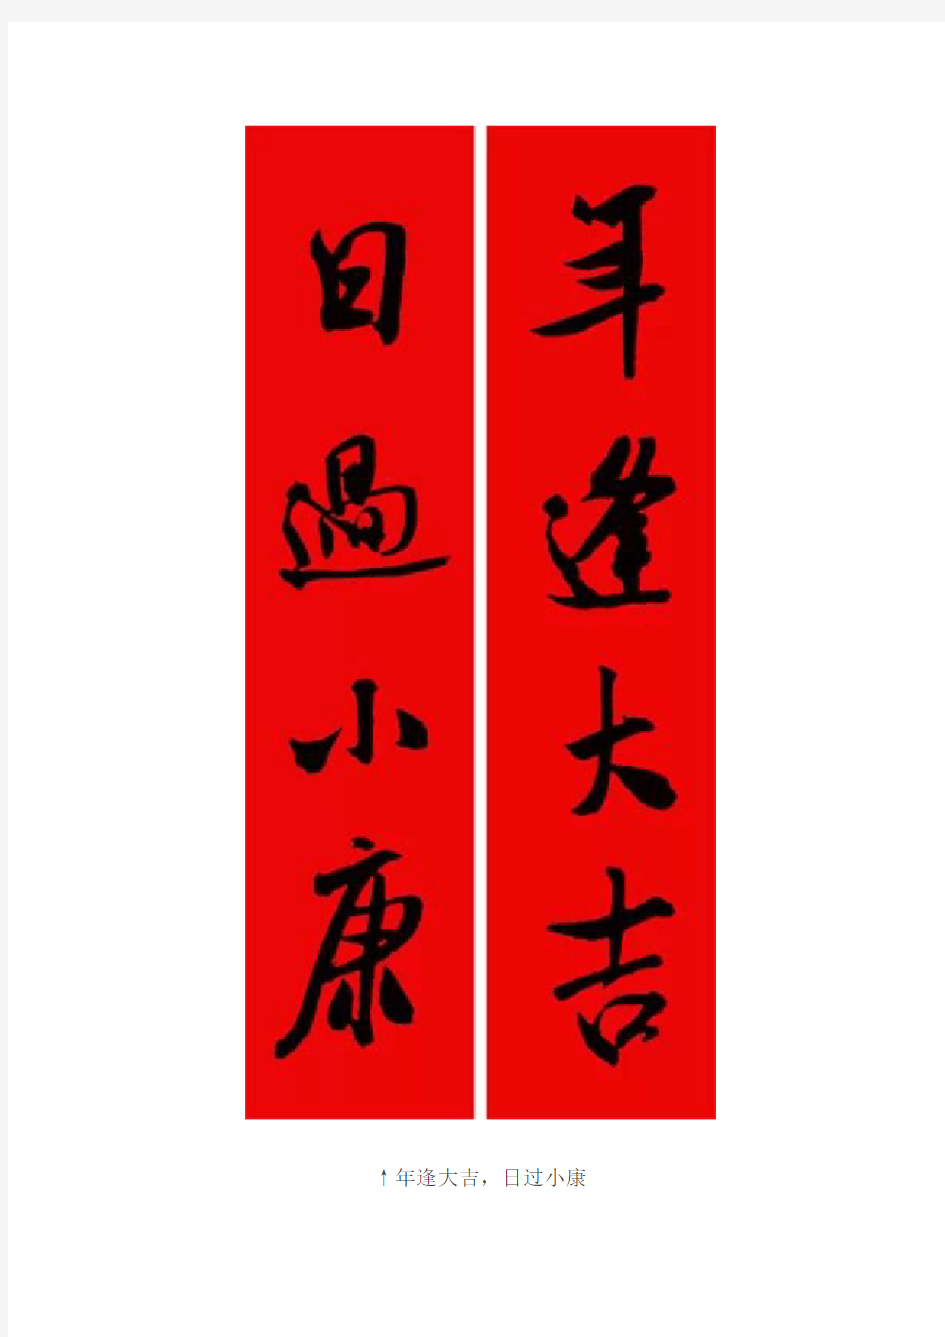 2014-12-25-米芾行书集字春联——这是要过年的节奏啊